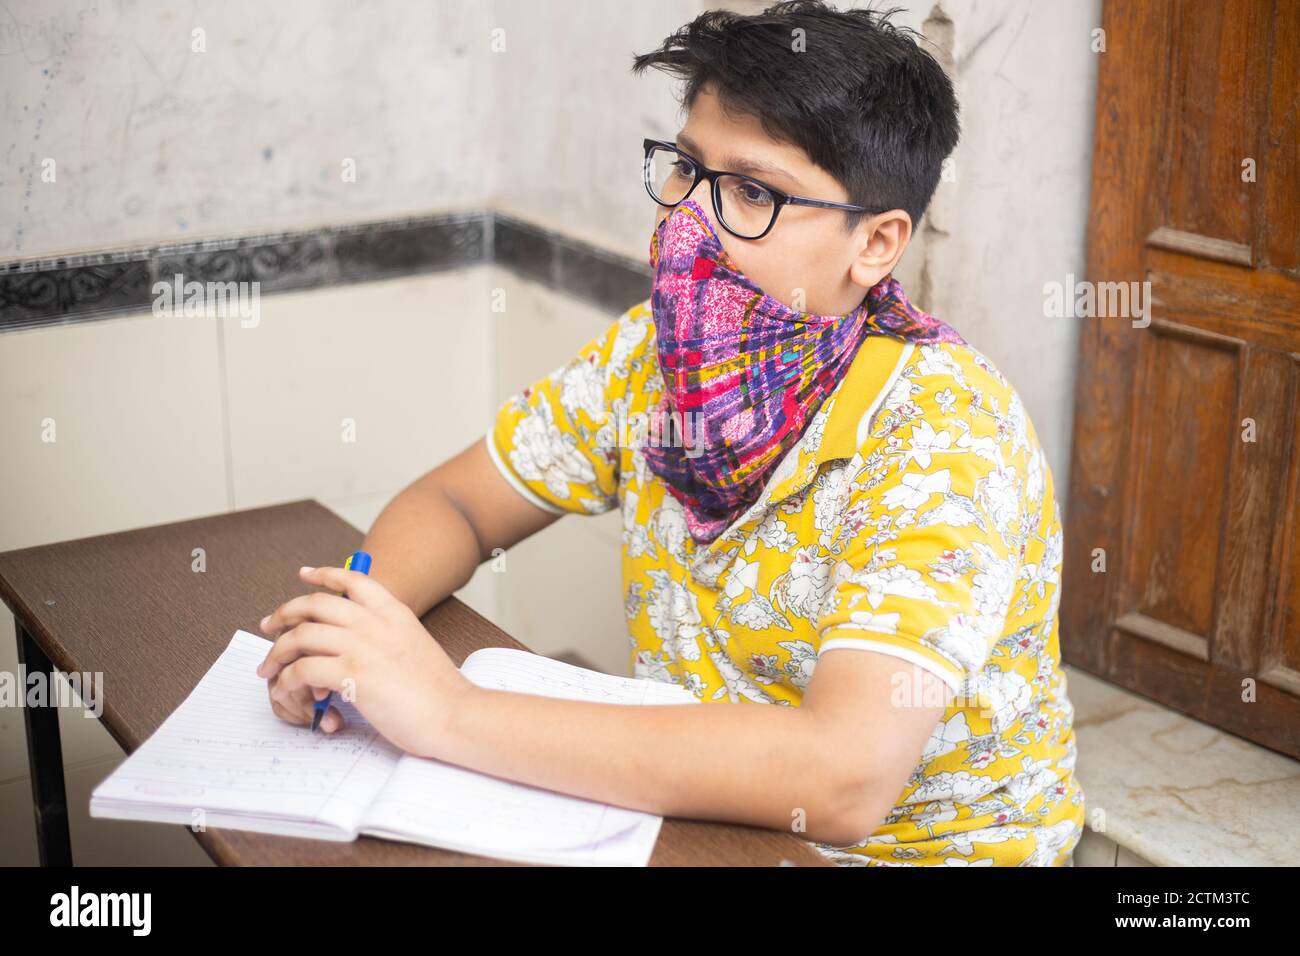 Estudiante de niño indio que estudia en el salón de clases usando máscara manteniendo el distanciamiento social mira la cámara, la escuela reabre durante la pandemia de covid19 Foto de stock